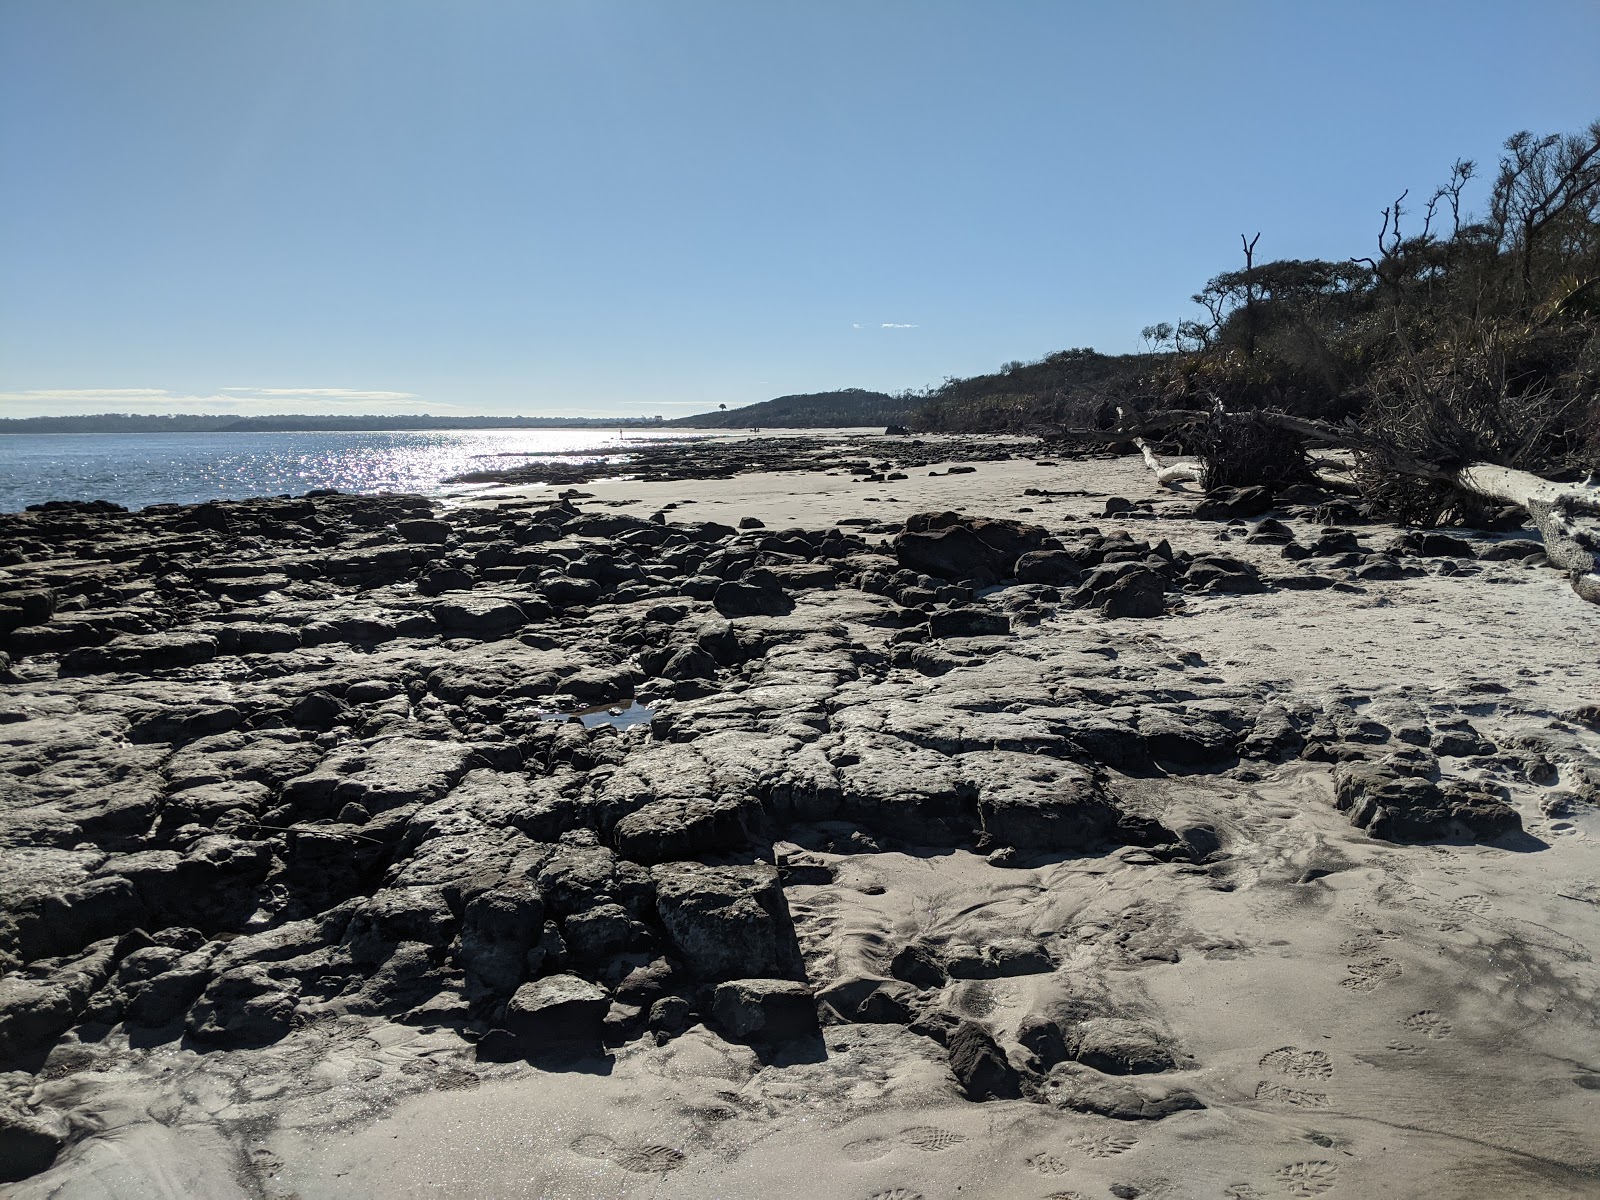 Foto af Black rock beach - populært sted blandt afslapningskendere